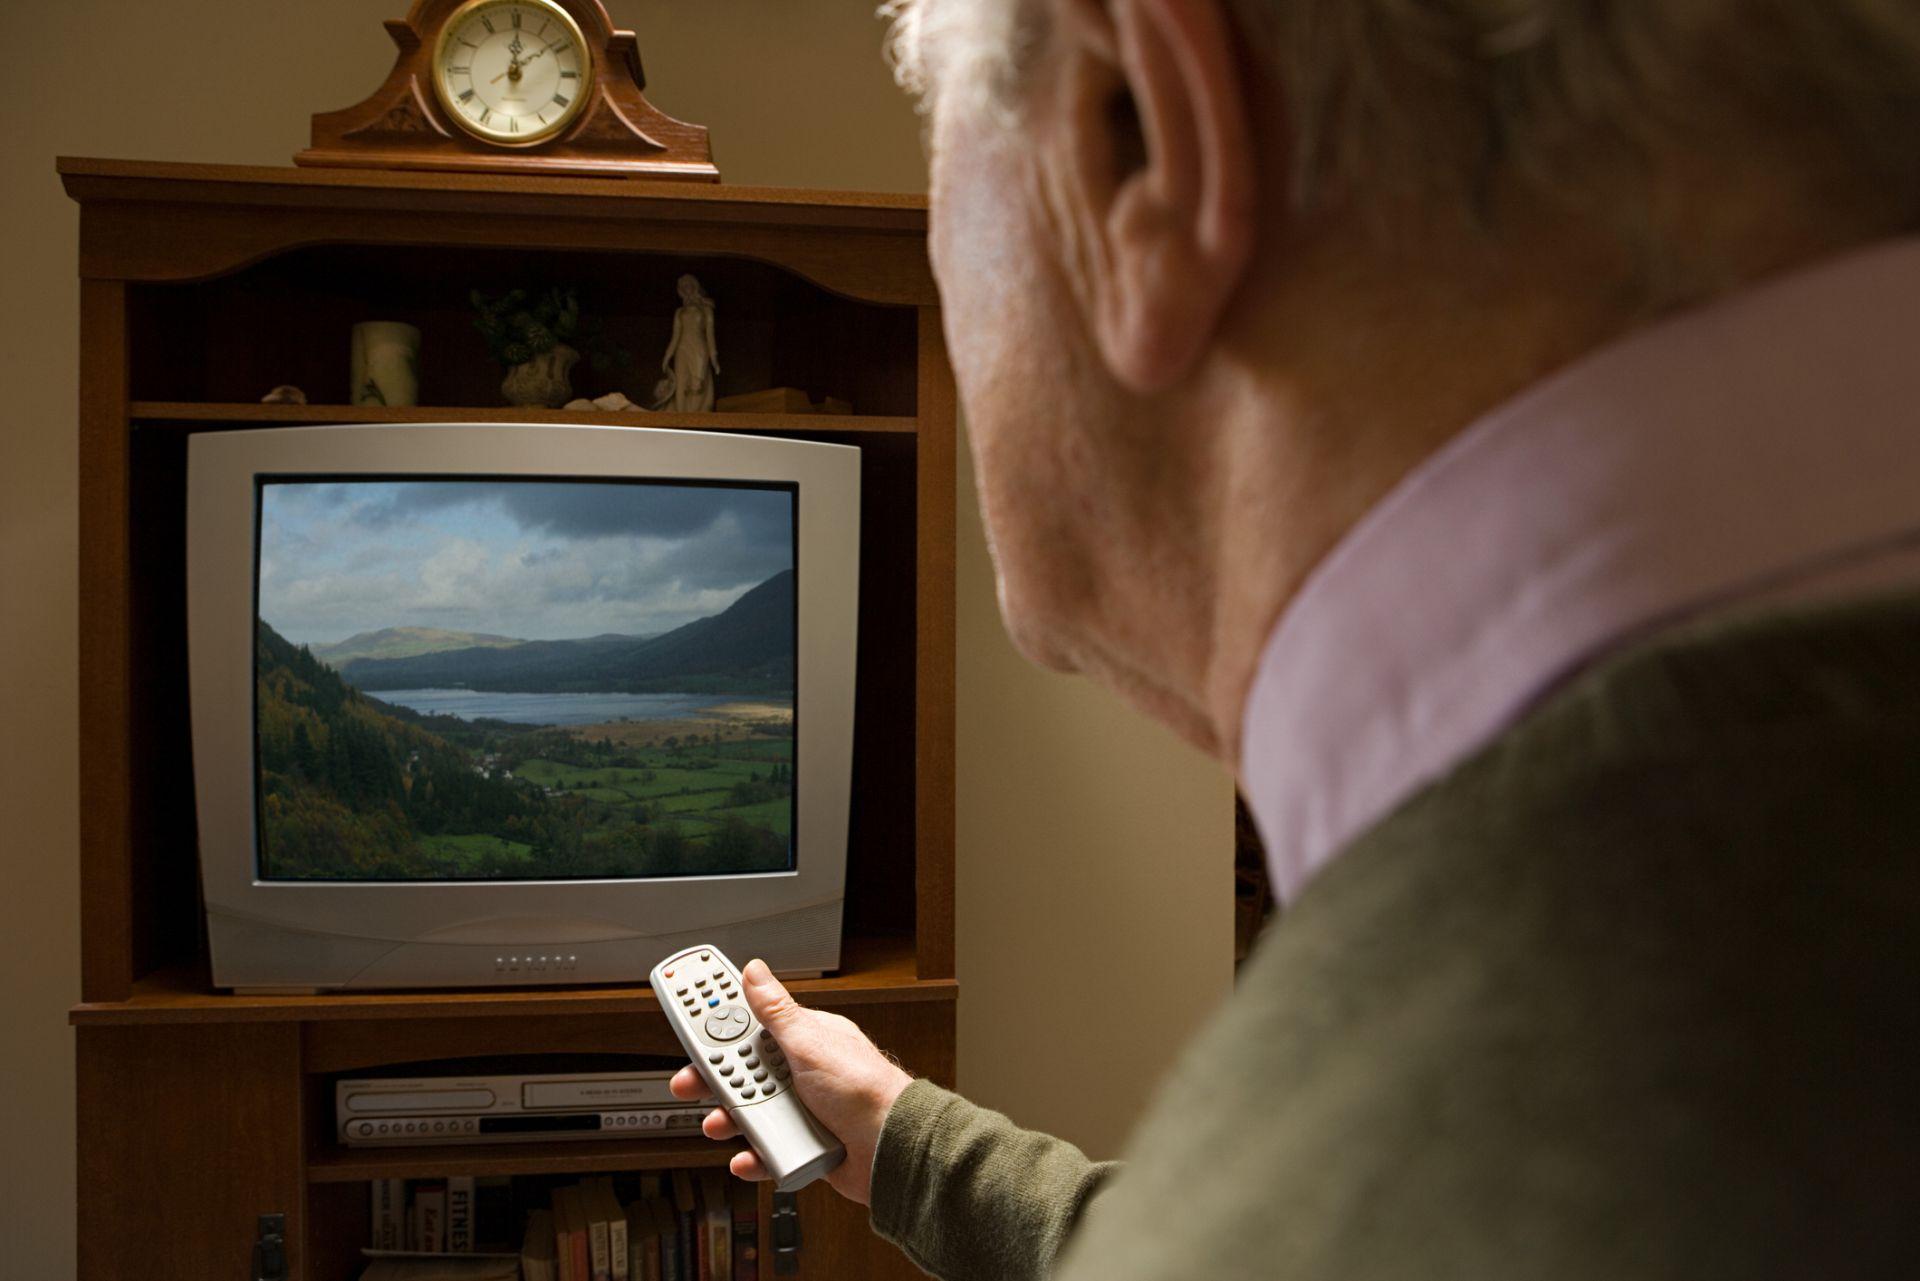 Tägliches Fernsehen kann das Demenzrisiko erhöhen